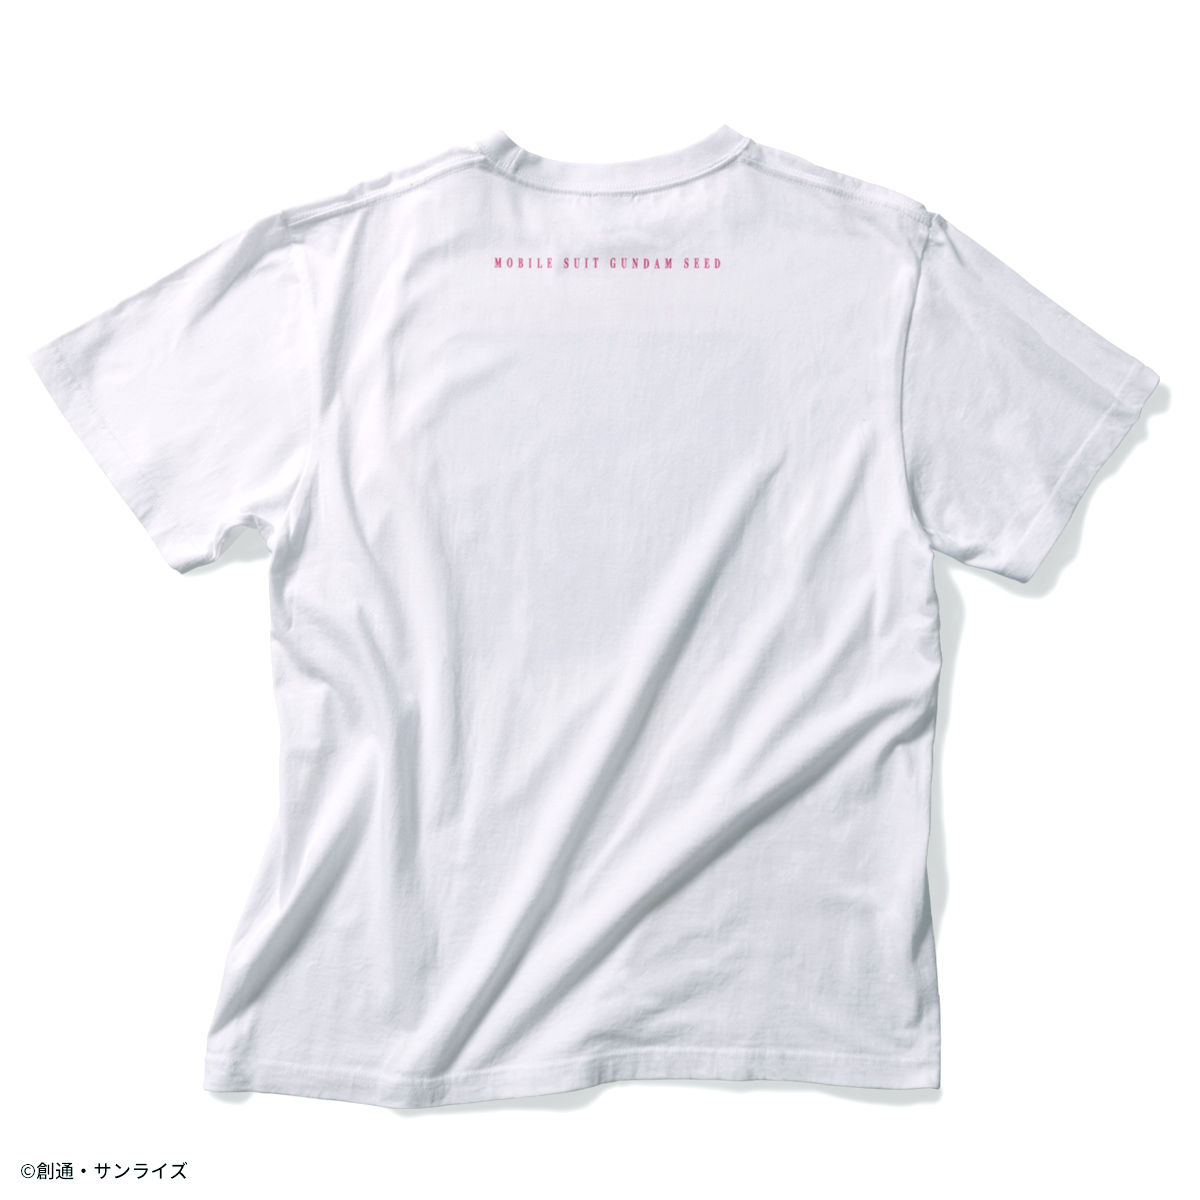 『機動戦士ガンダムSEED』より夏らしいグラデーションをテーマにしたサマーコレクションを展開!Tシャツ、ワークシャツ、キャップの新柄が登場!